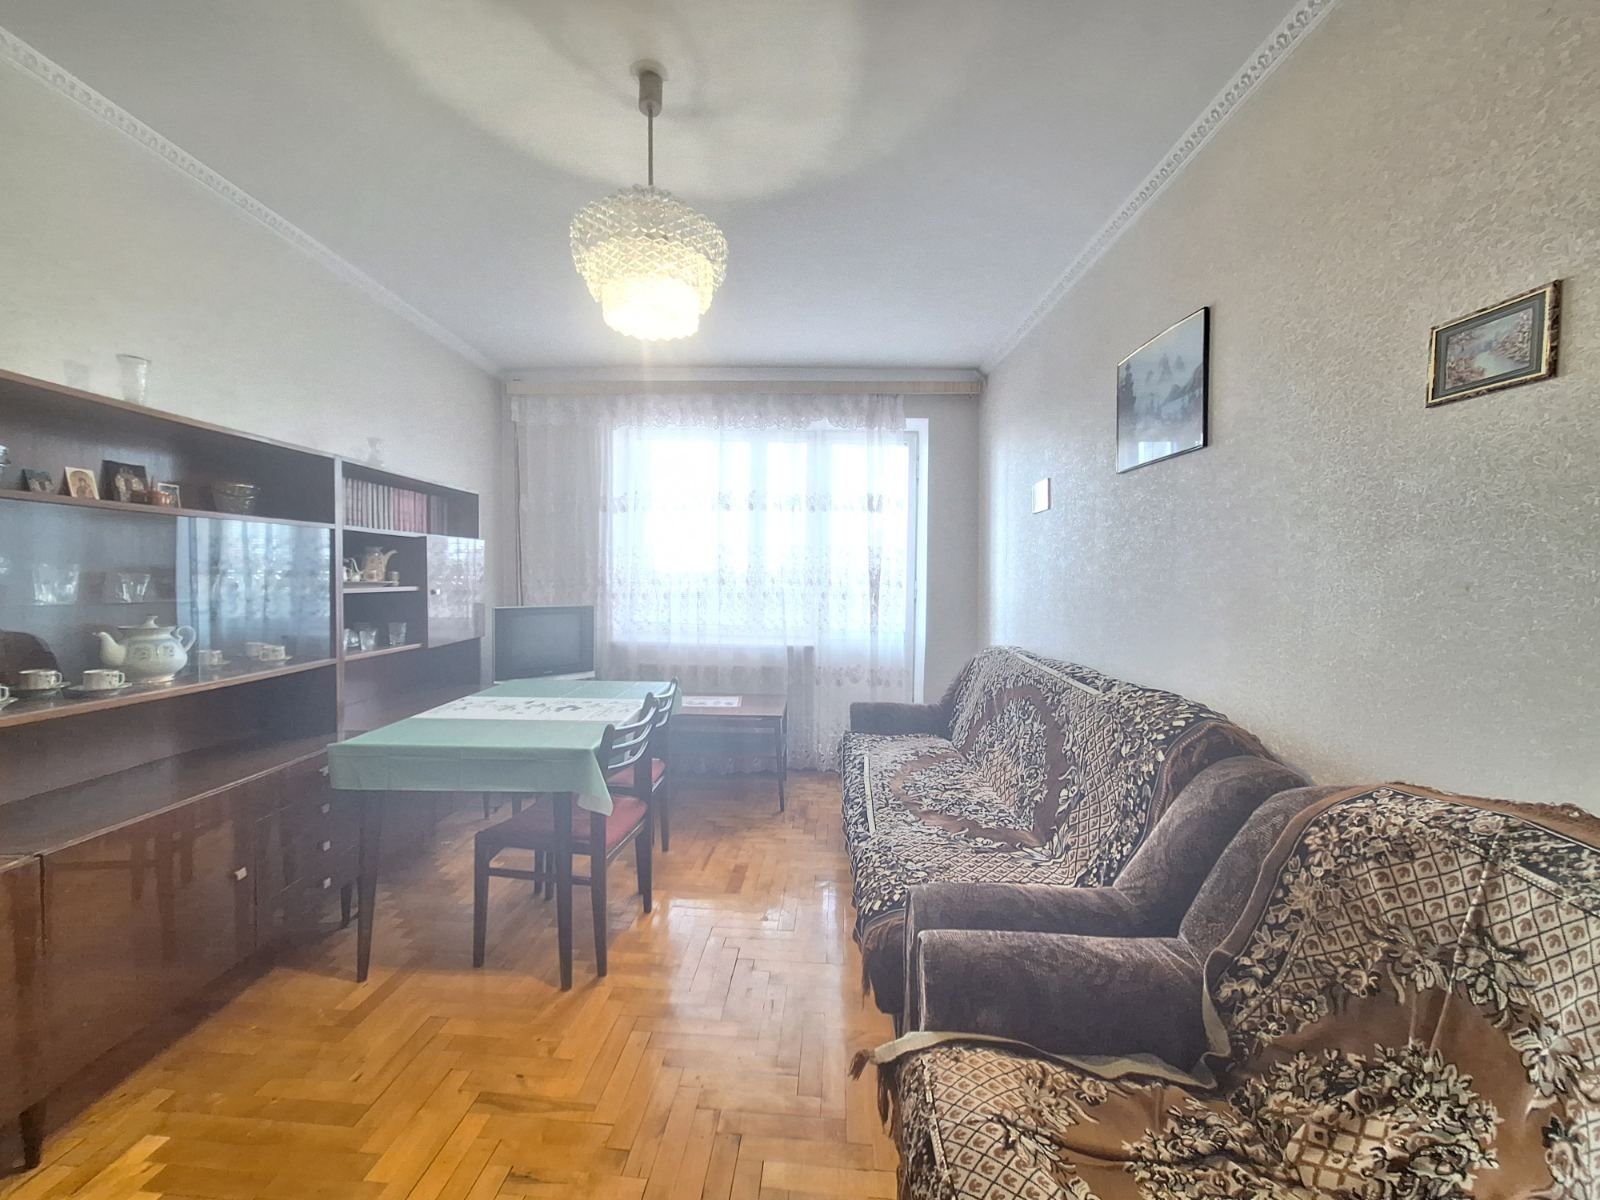 Квартира 2/х кім вул.Київська з індивідуальним опаленням